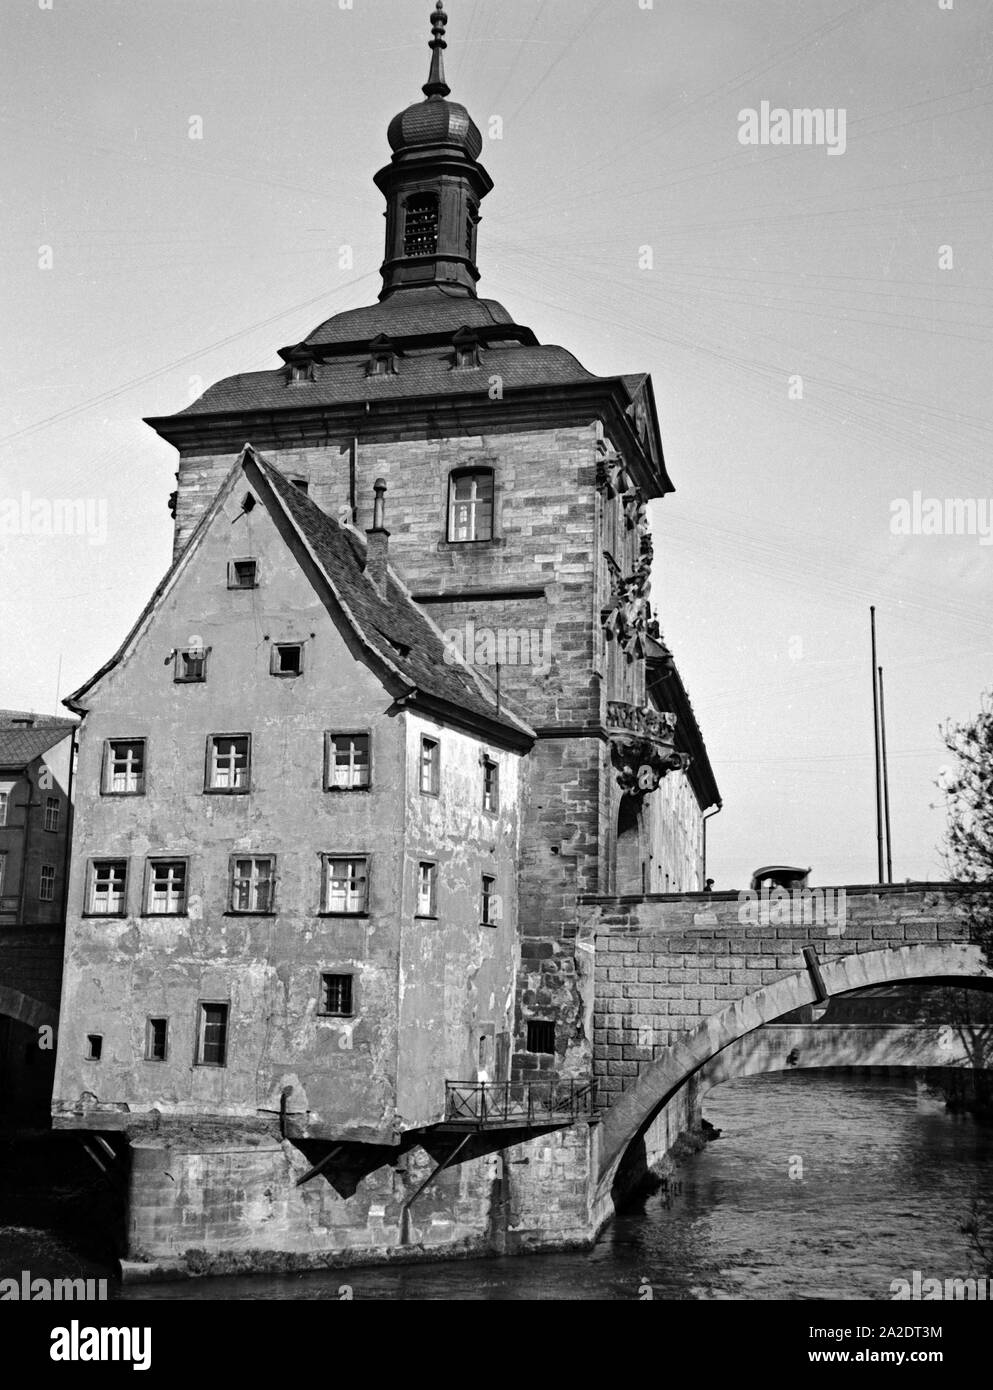 Das alte Rathaus auf der Brücke über die Regnitz a Bamberg, Deutschland 1930er Jahre. Il vecchio Municipio presso il ponte sul fiume Regnitz a Bamberg, Germania 1930s. Foto Stock